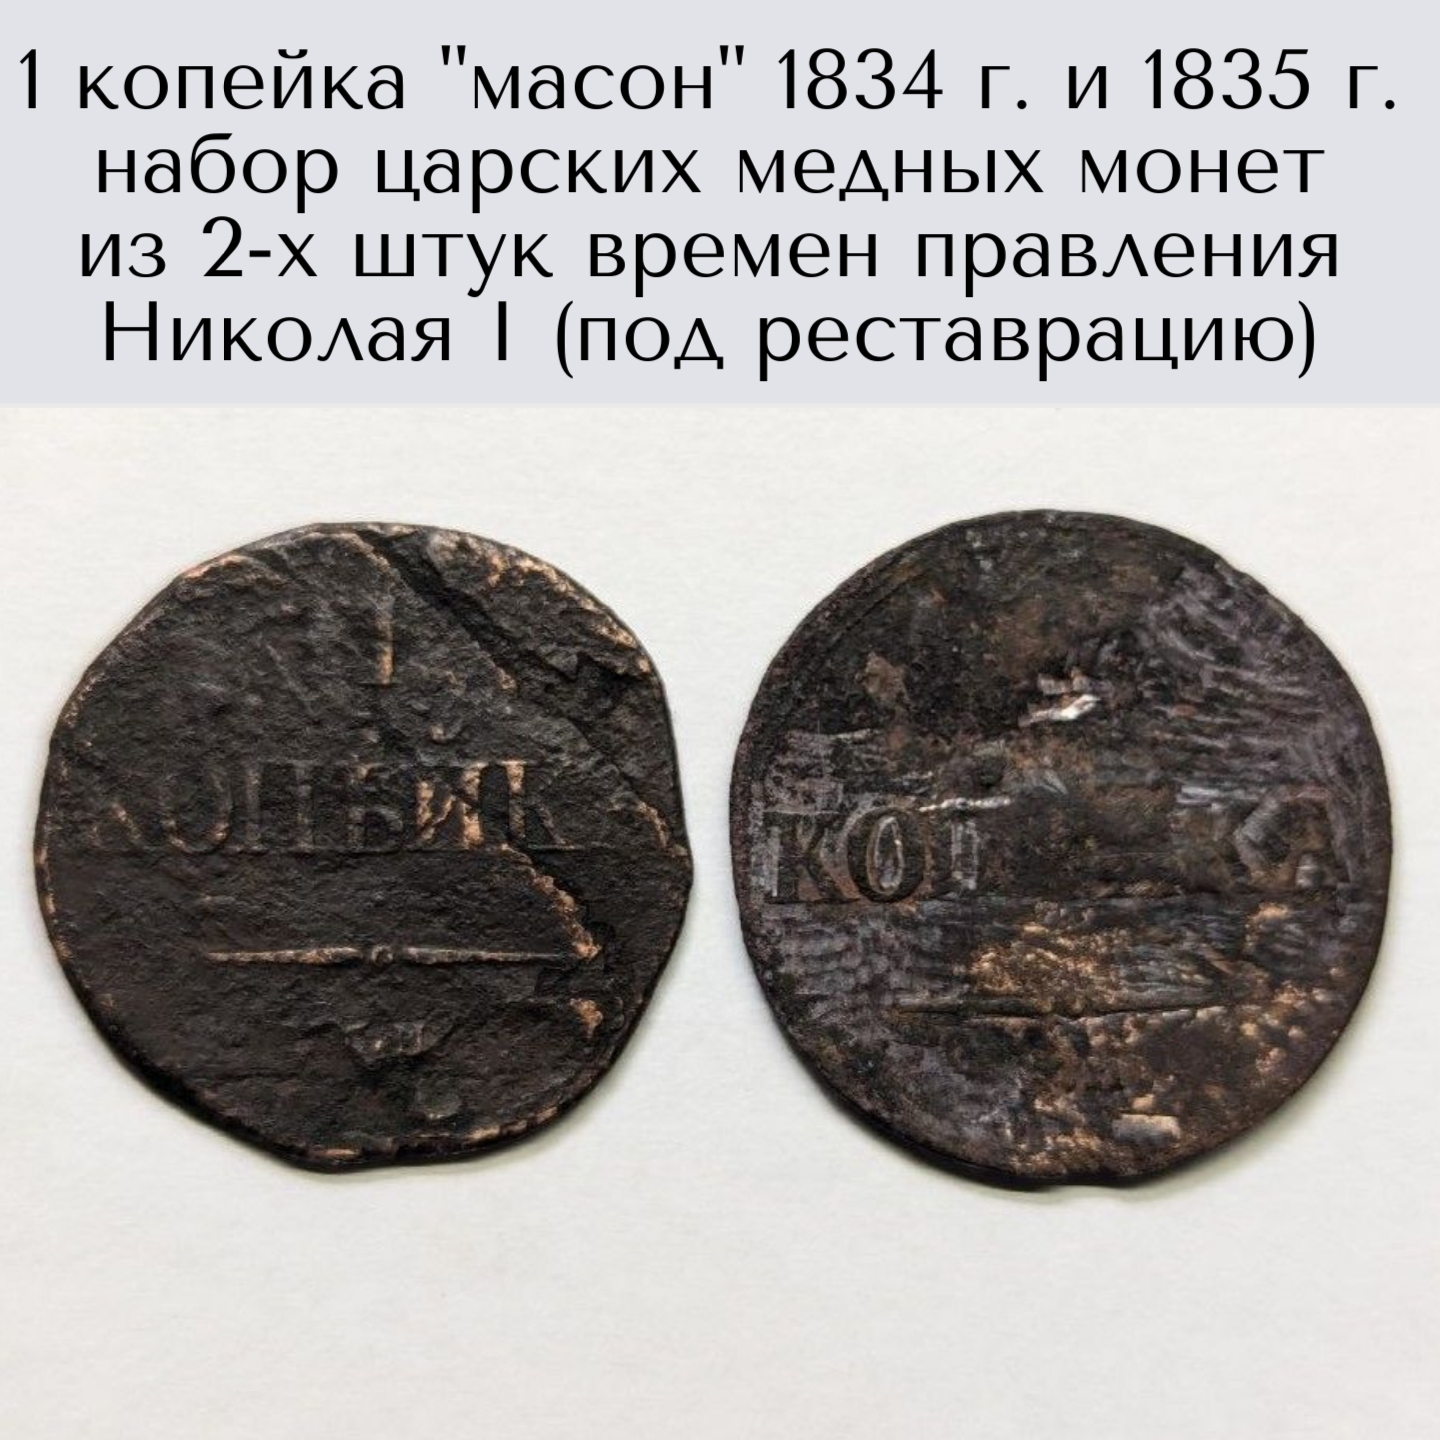 1 копейка "масон" 1834 г. и 1835 г. набор царских медных монет из 2-х штук времен правления Николая I (под реставрацию)